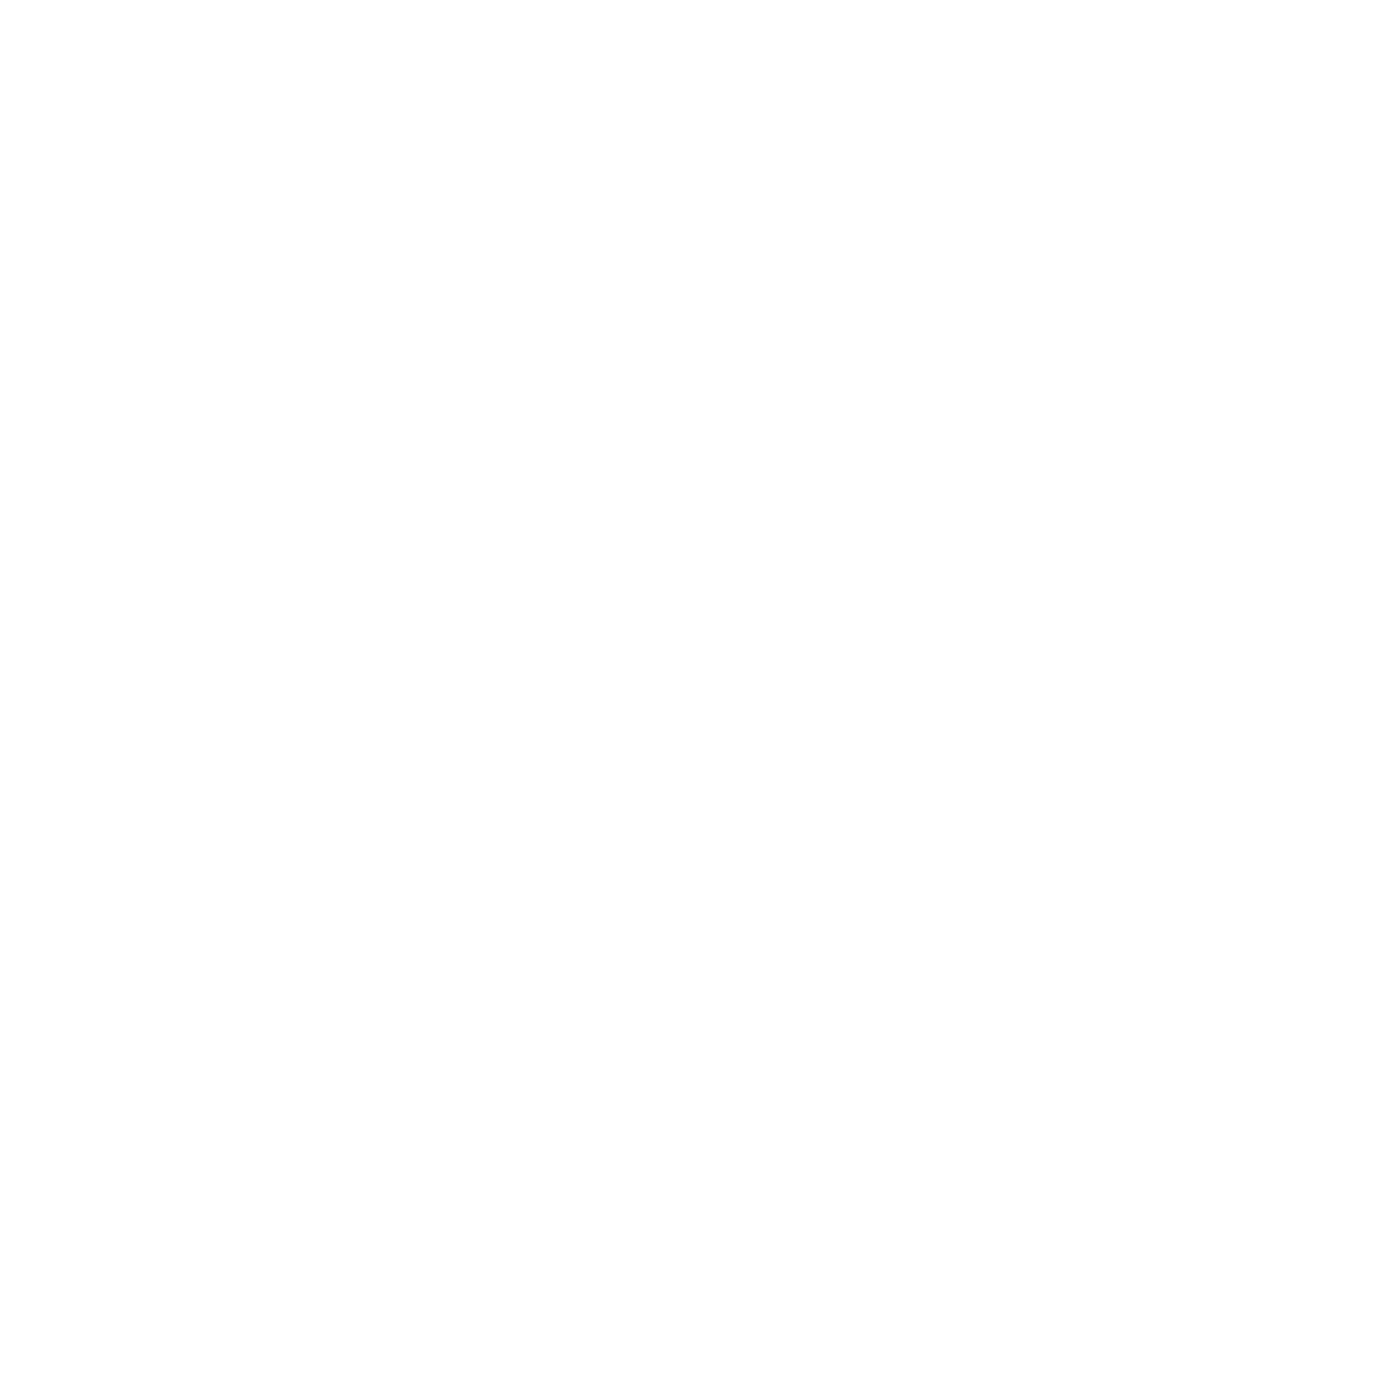 Gazze Destek Organization